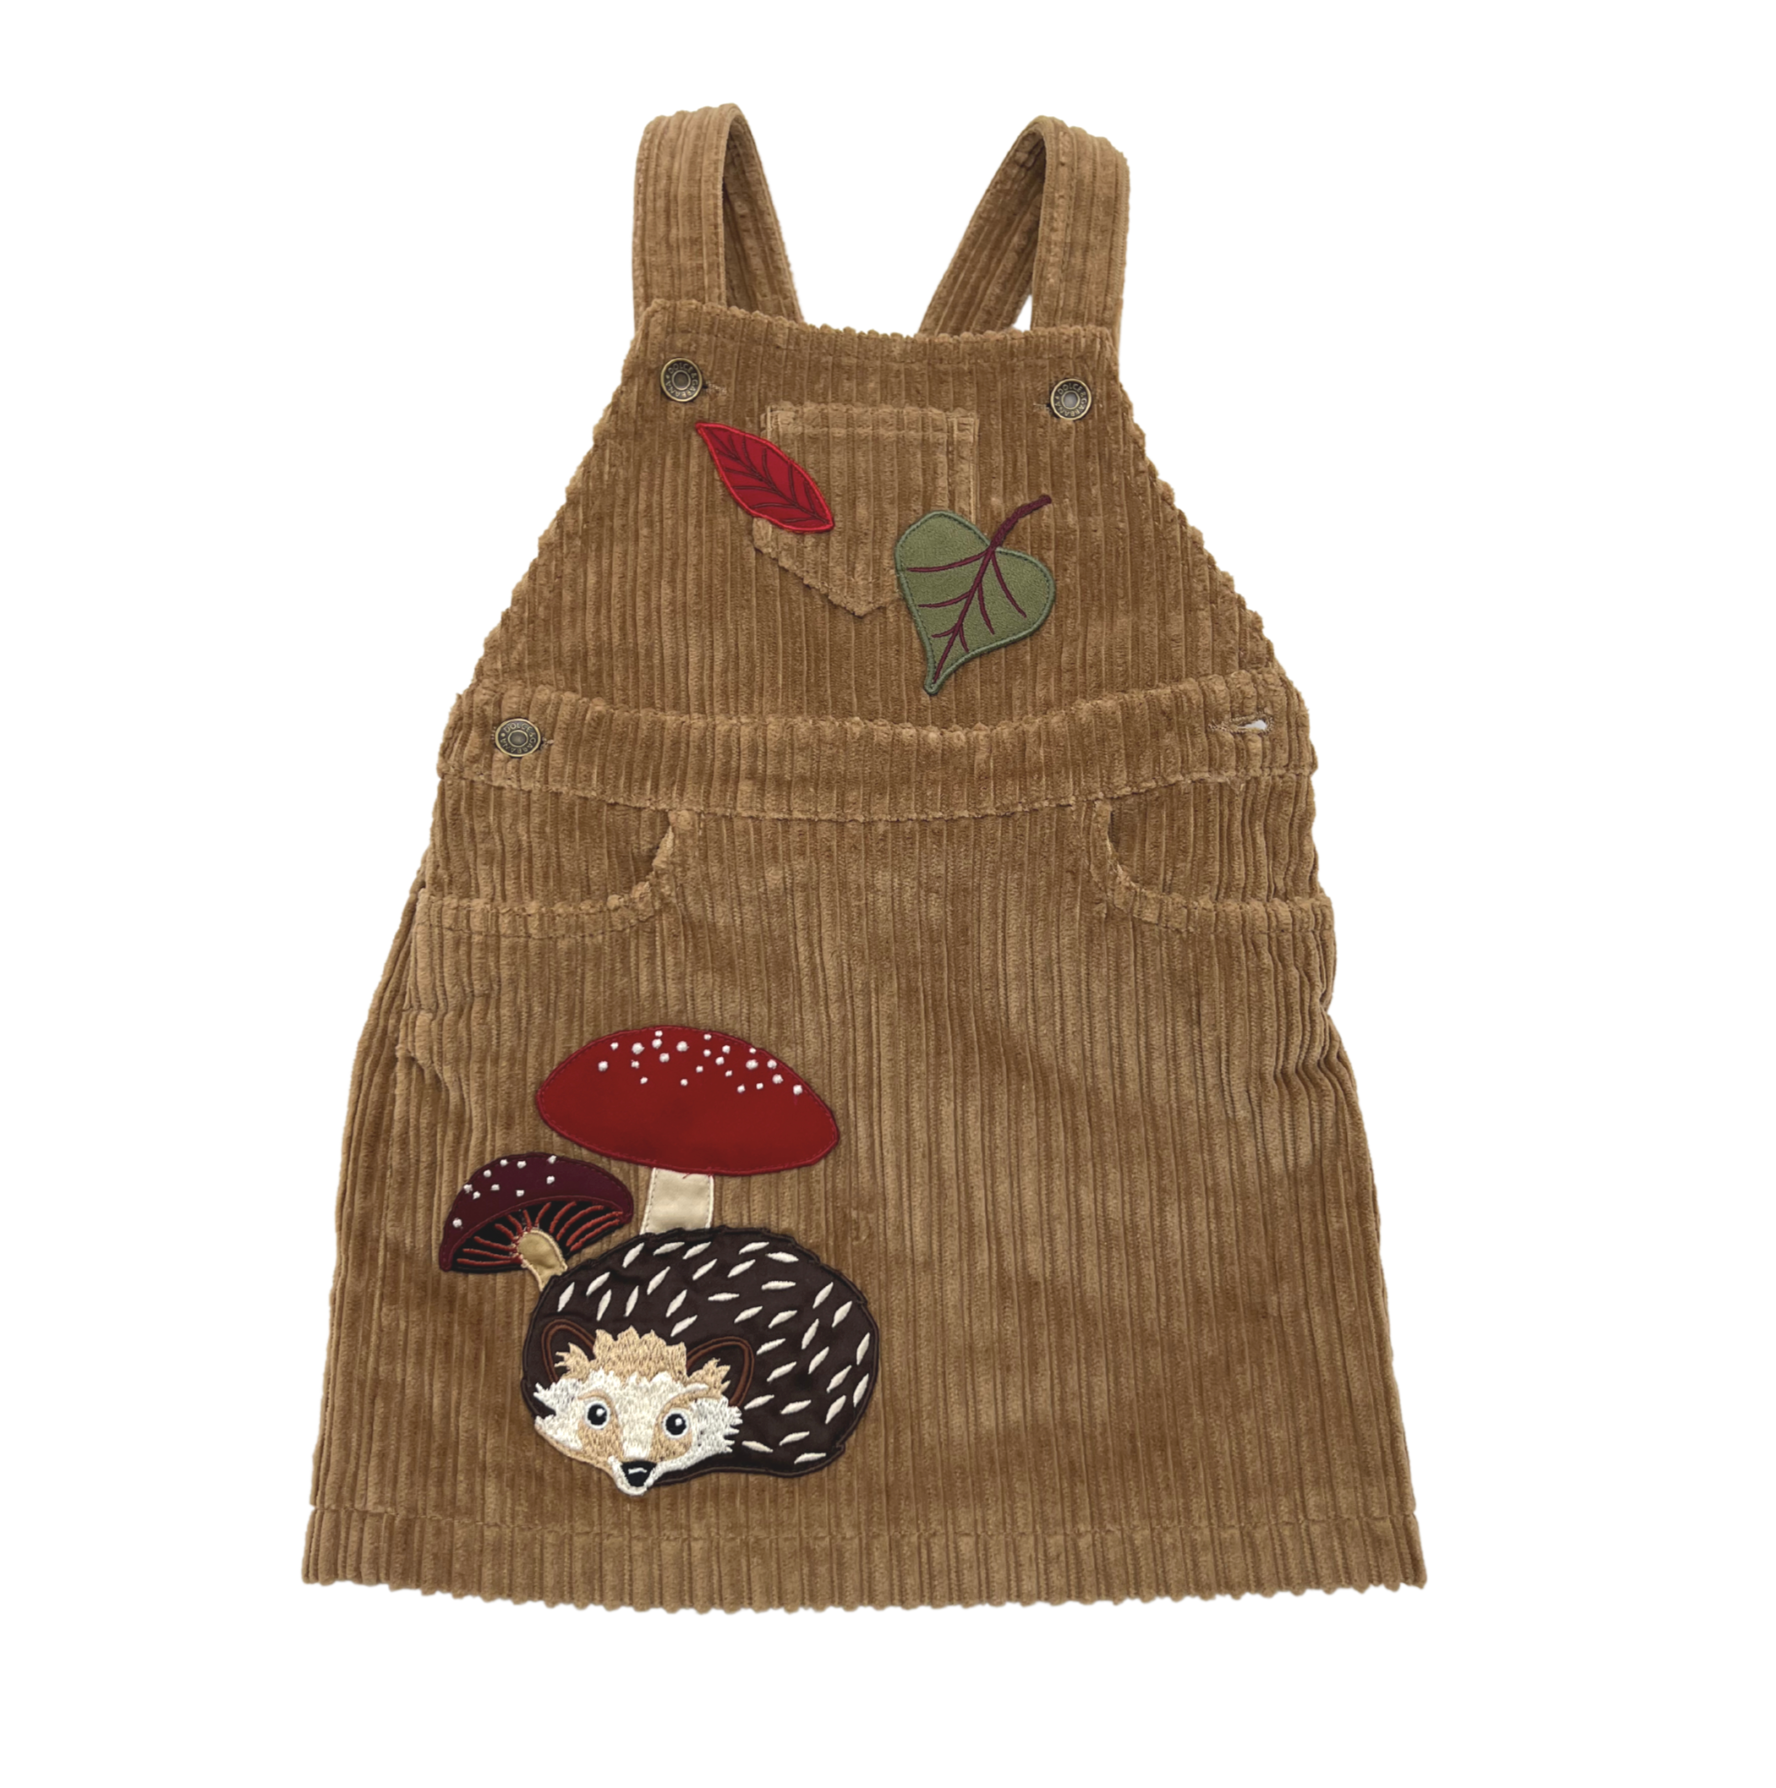 DOLCE &amp; GABBANA - Camel velvet dress with mushroom, hedgehog &amp; leaf embroidery - 2 years old